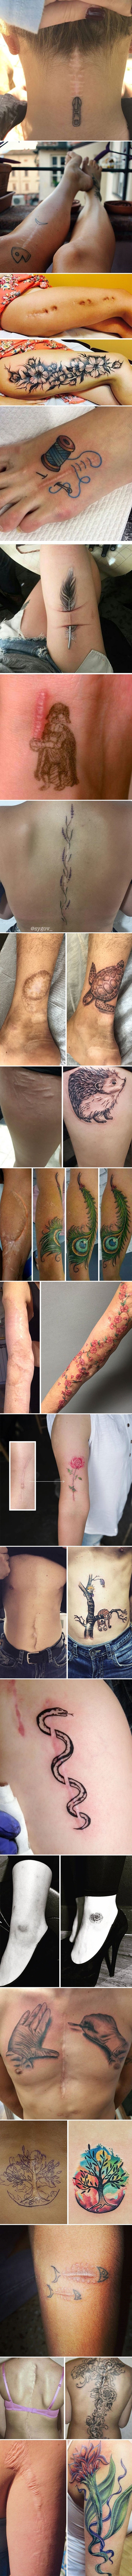 Svojim ožiljcima su dodali razne tetovaže i napravili zanimljive kombinacije